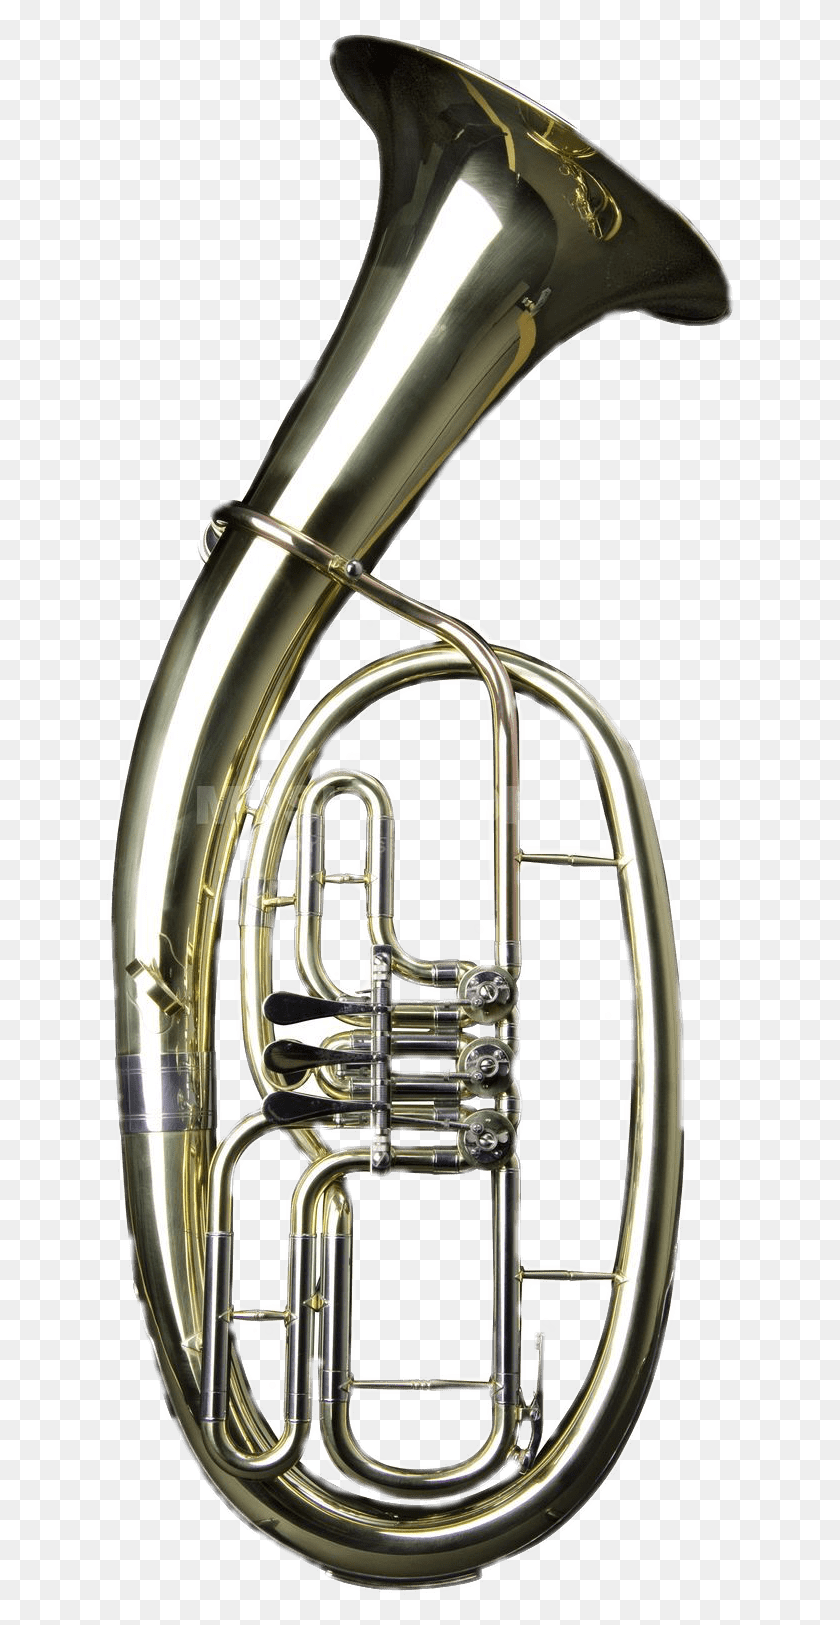 628x1565 Descargar Png / Instrumento Musical De Cuerno Tenor De Latón, Tuba, Instrumento Musical Hd Png